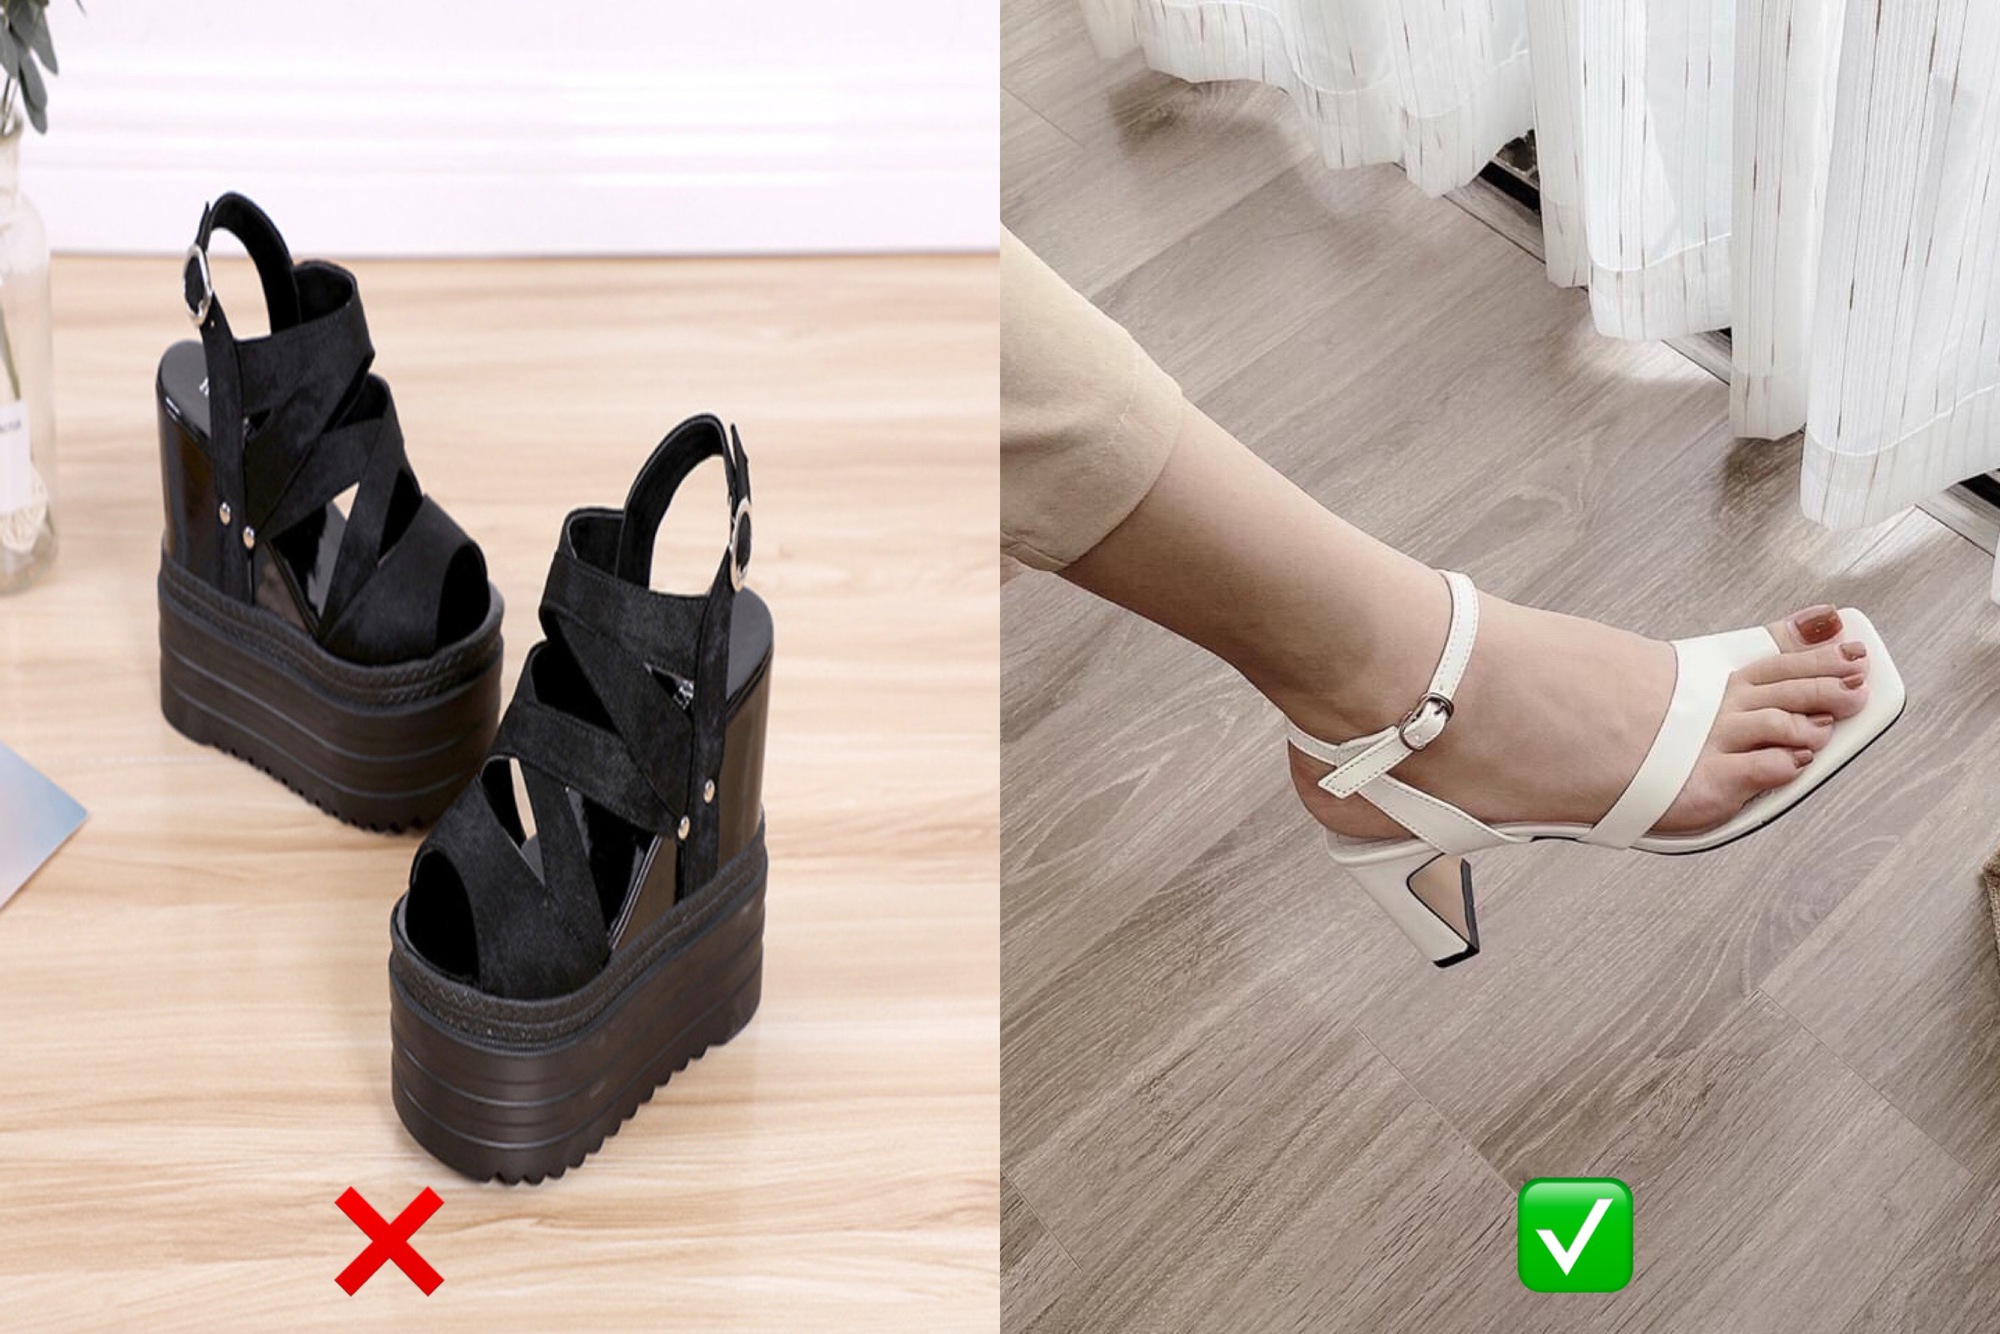 4 kiểu sandal không còn hợp xu hướng, mua về chỉ phí tiền - Ảnh 2.